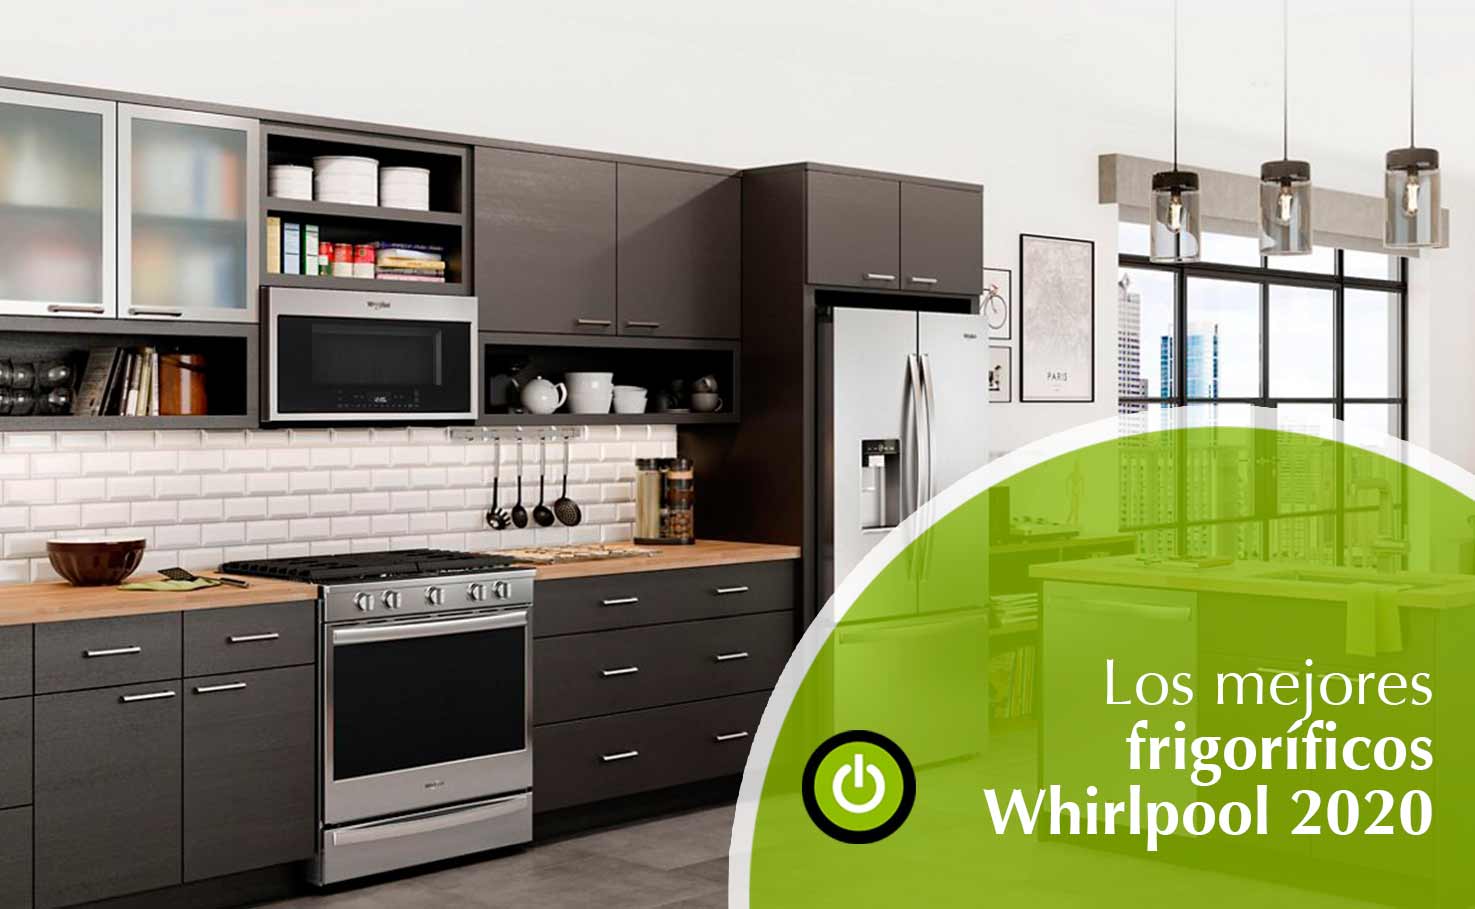 ¿Sabes cuáles son los mejores frigoríficos Whirlpool?